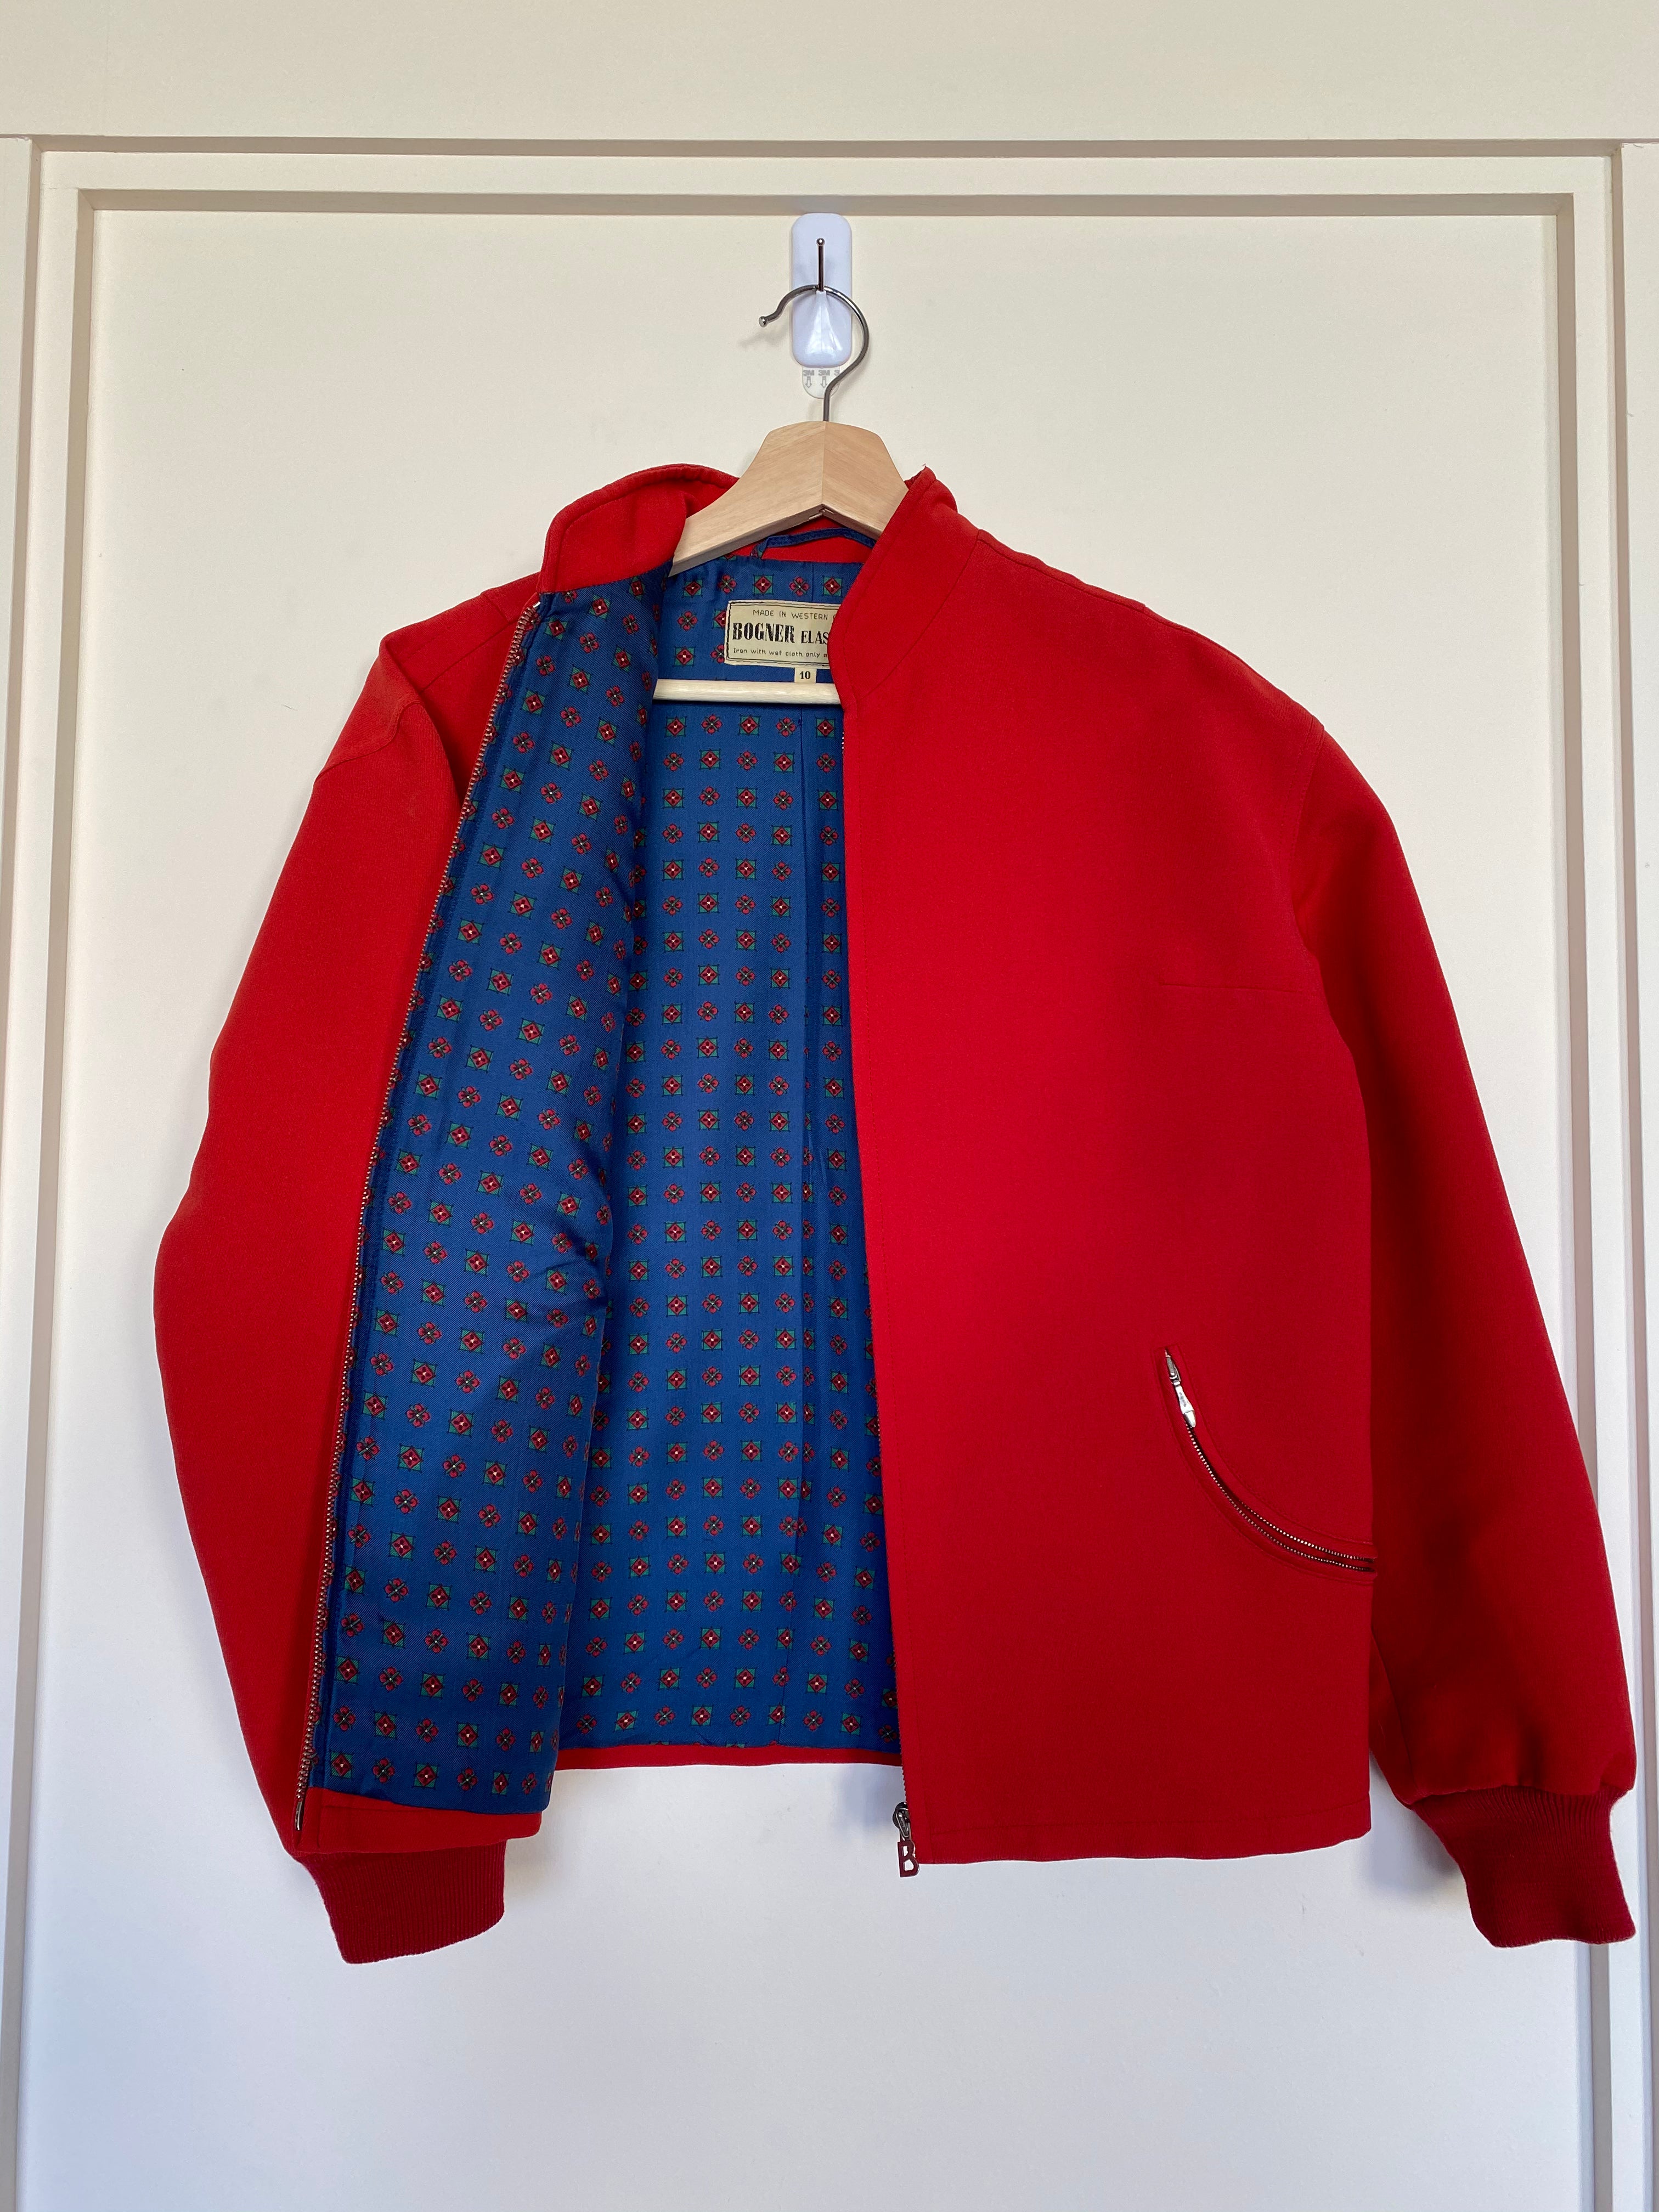 Vintage Bogner Red 2-piece ski suit, jacket open showing patterned lining